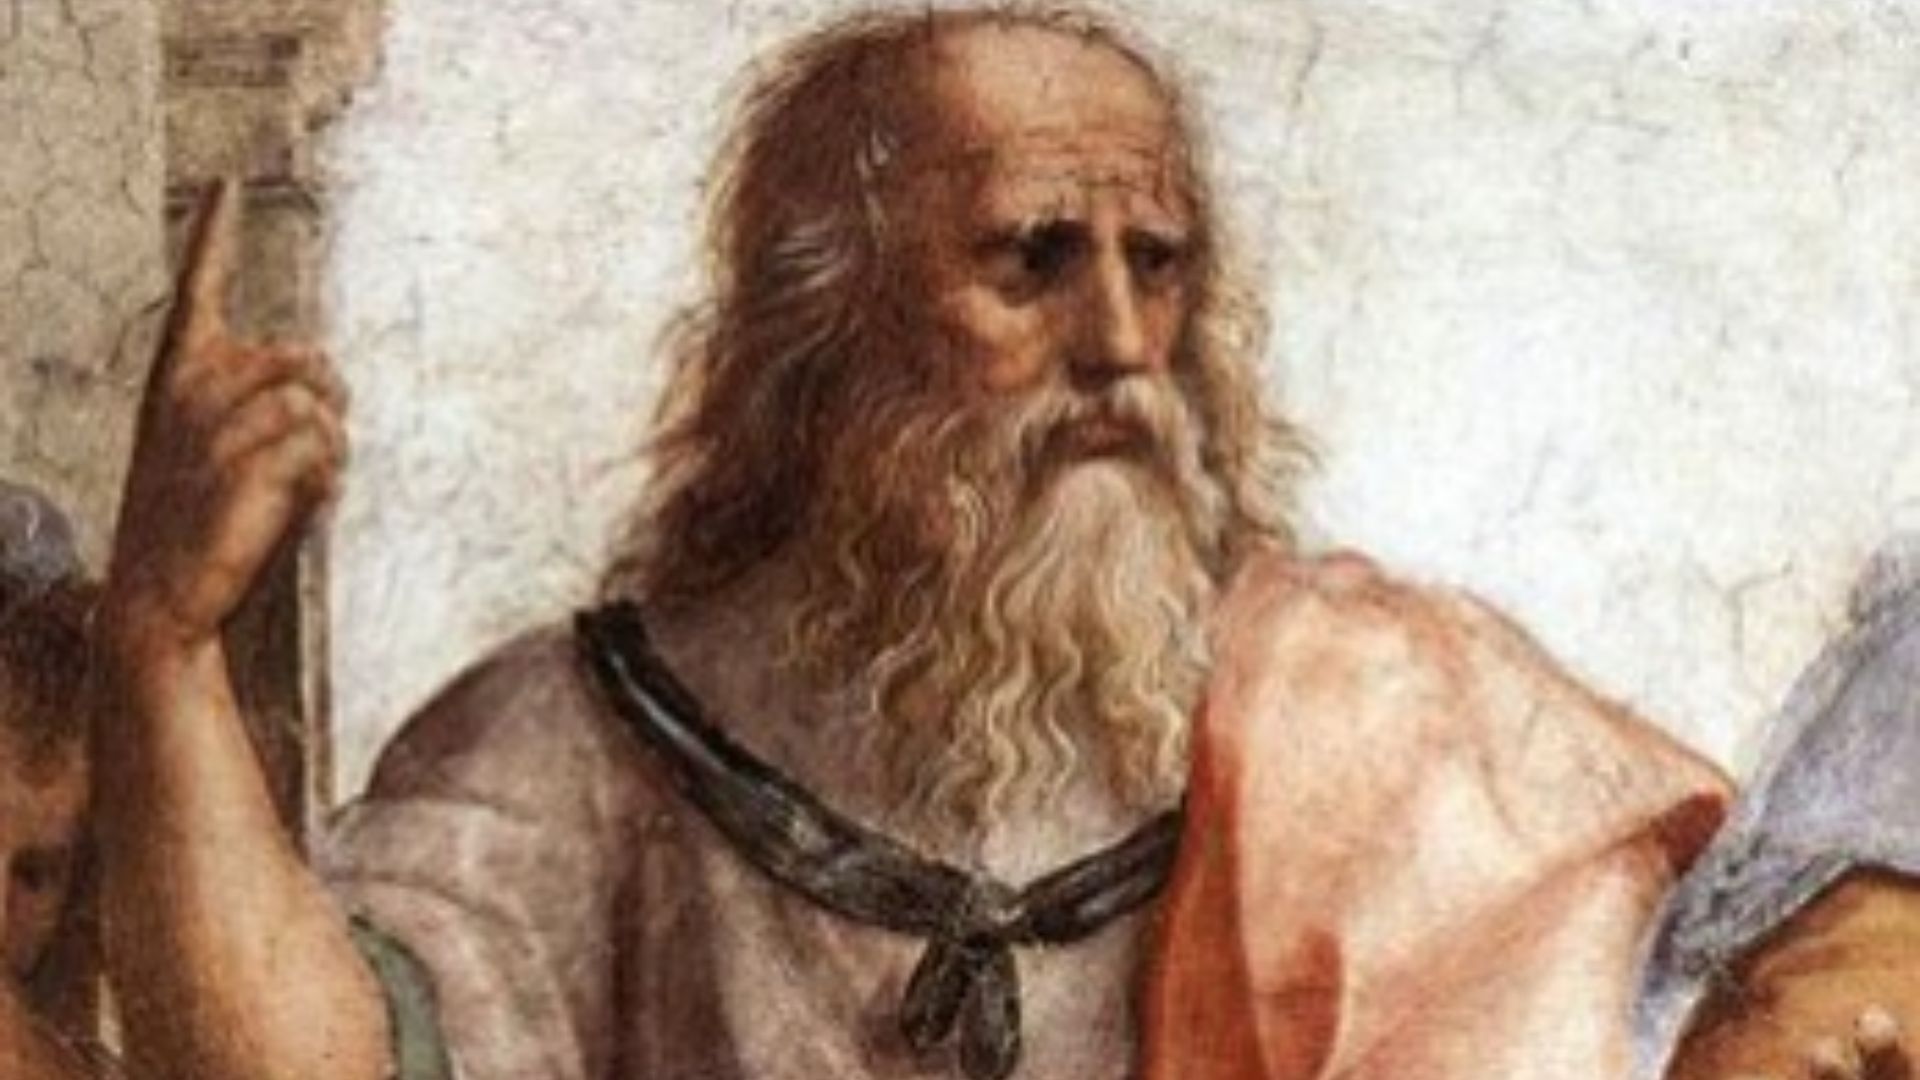 Plato: Filosof Besar dari Yunani Kuno